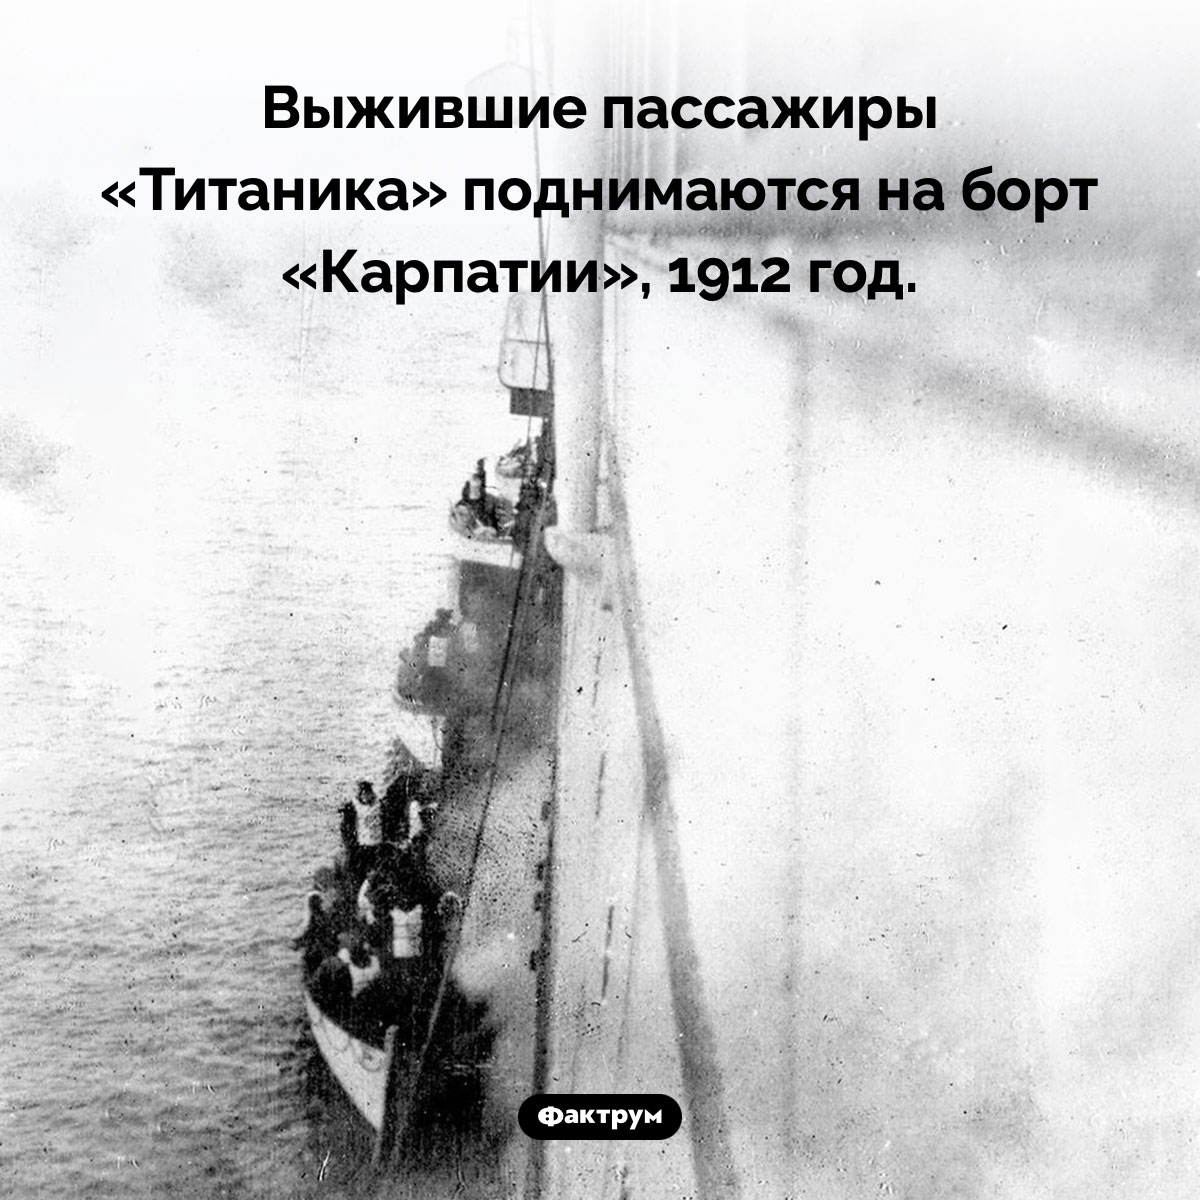 Выжившие пассажиры «Титаника». Выжившие пассажиры «Титаника» поднимаются на борт «Карпатии», 1912 год.